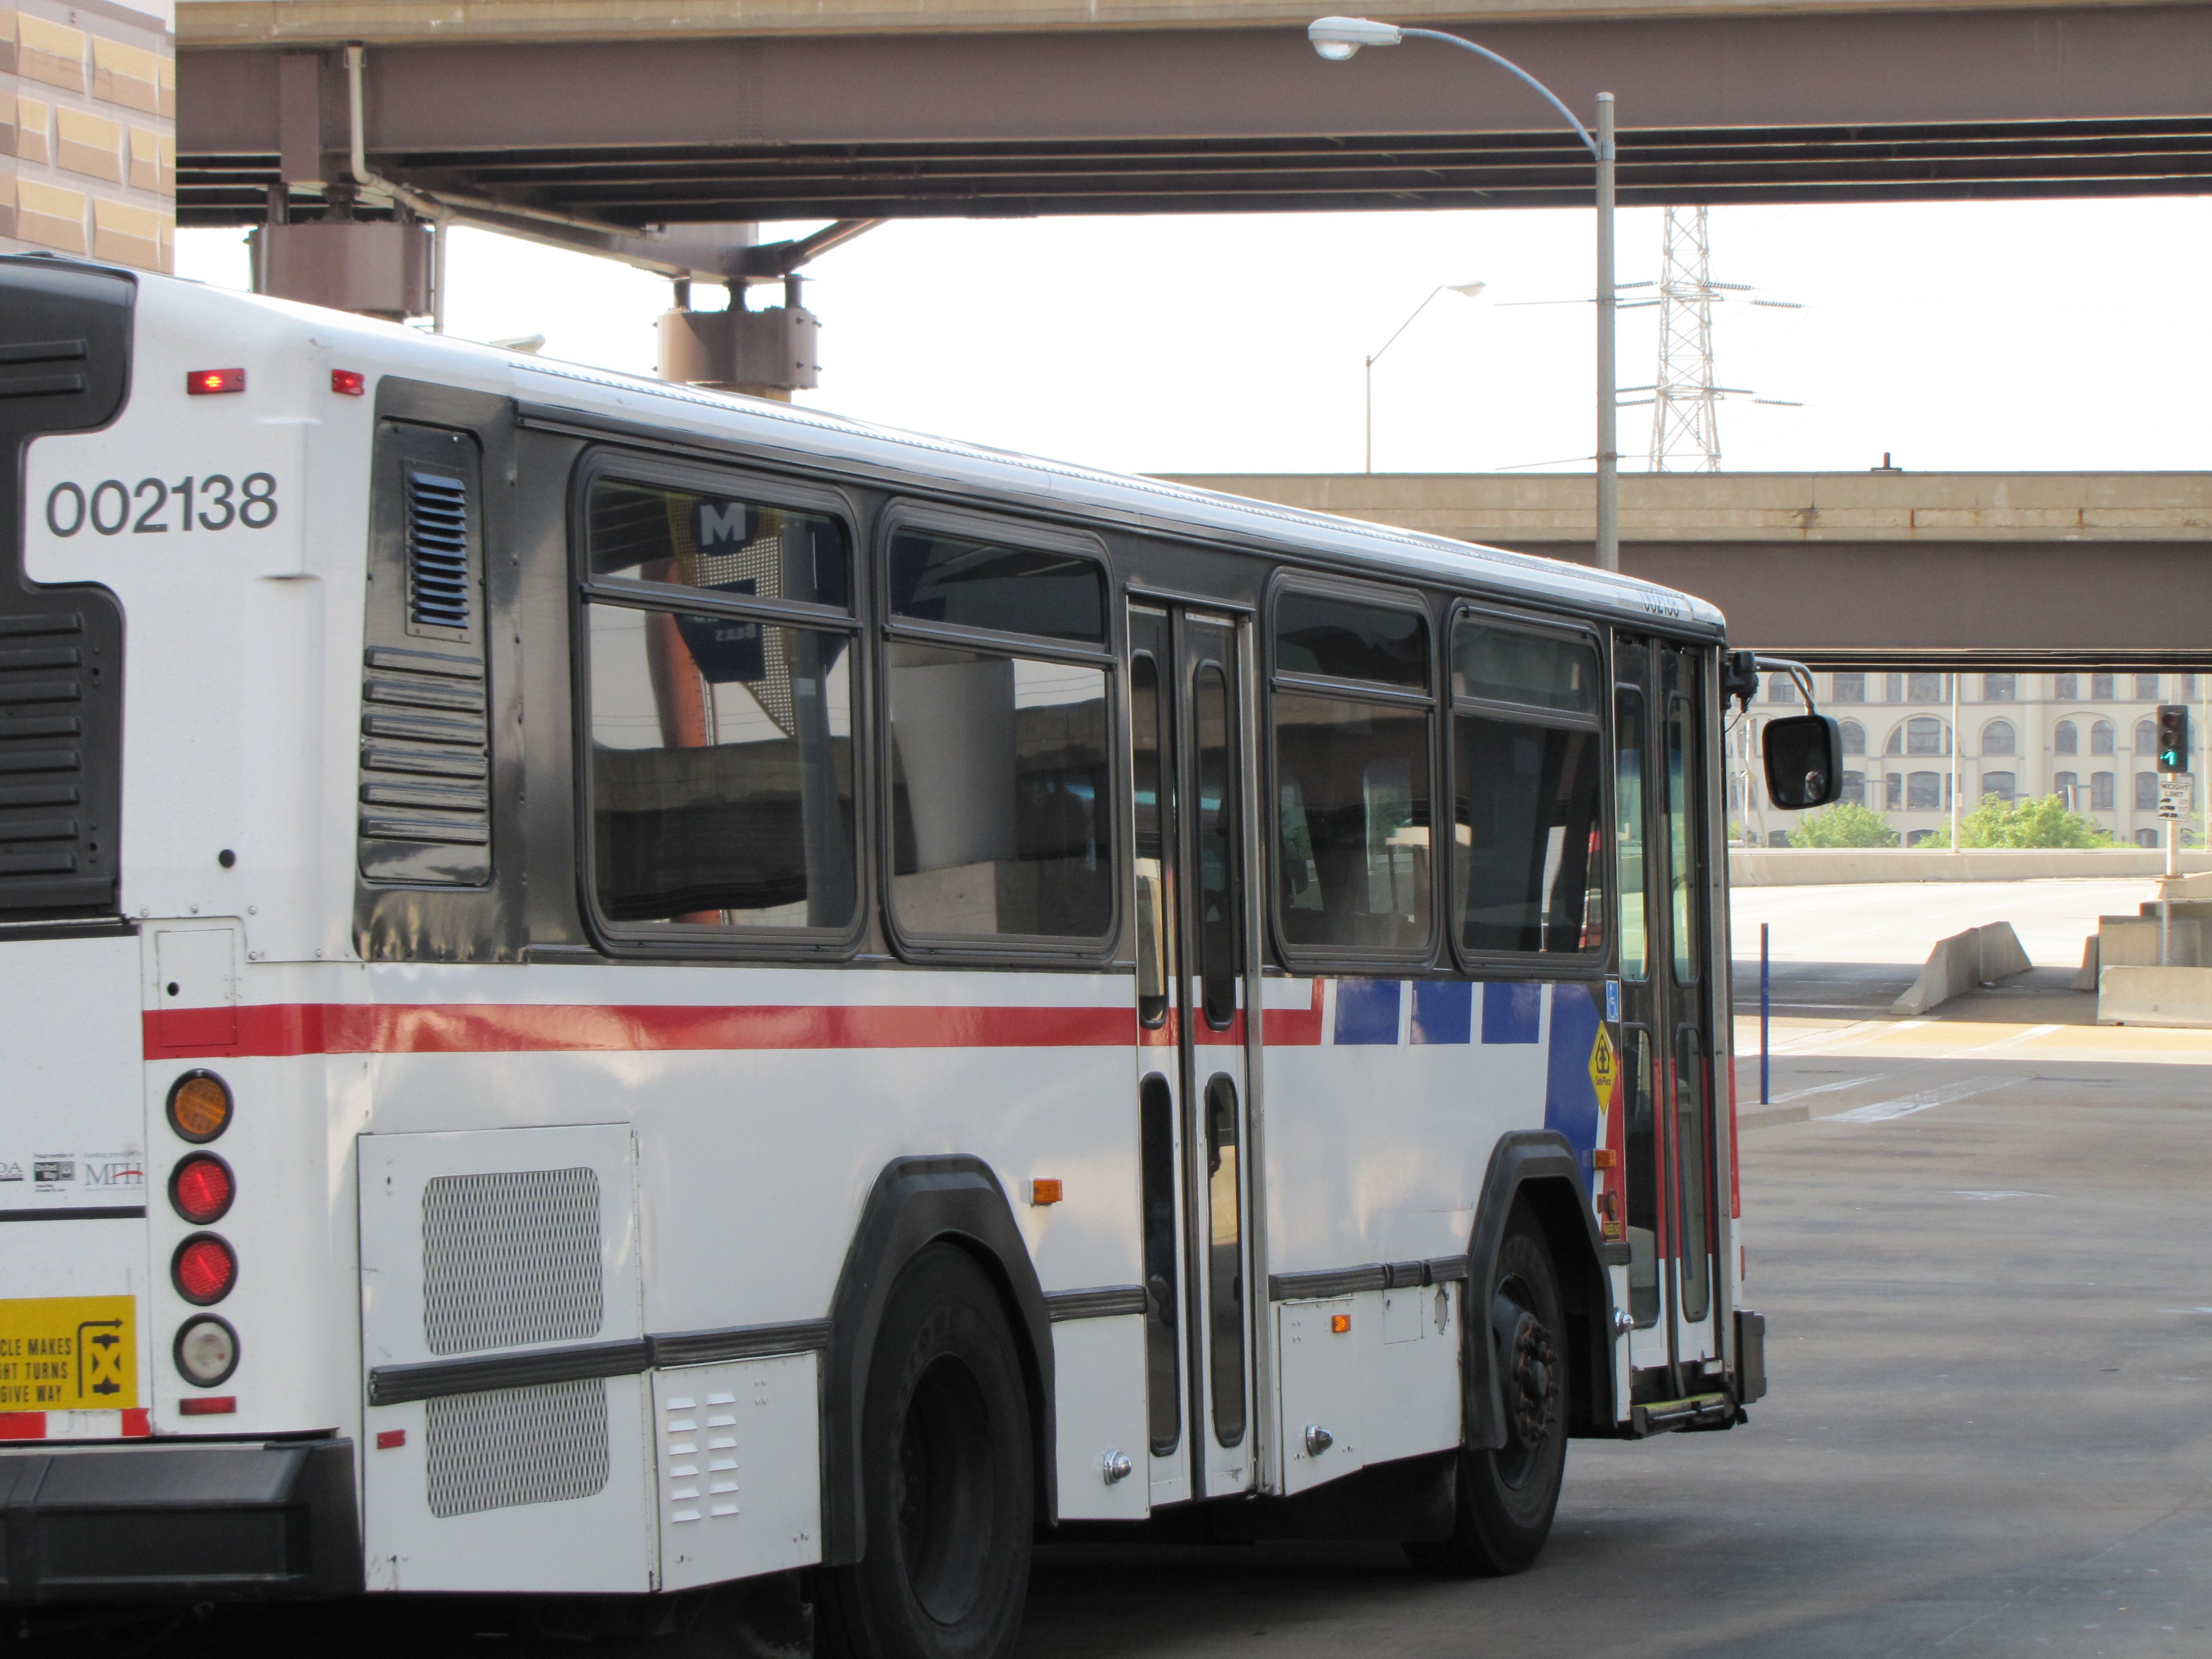 MetroBus Service, Park-Ride Lot Restored | Metro Transit – St. Louis